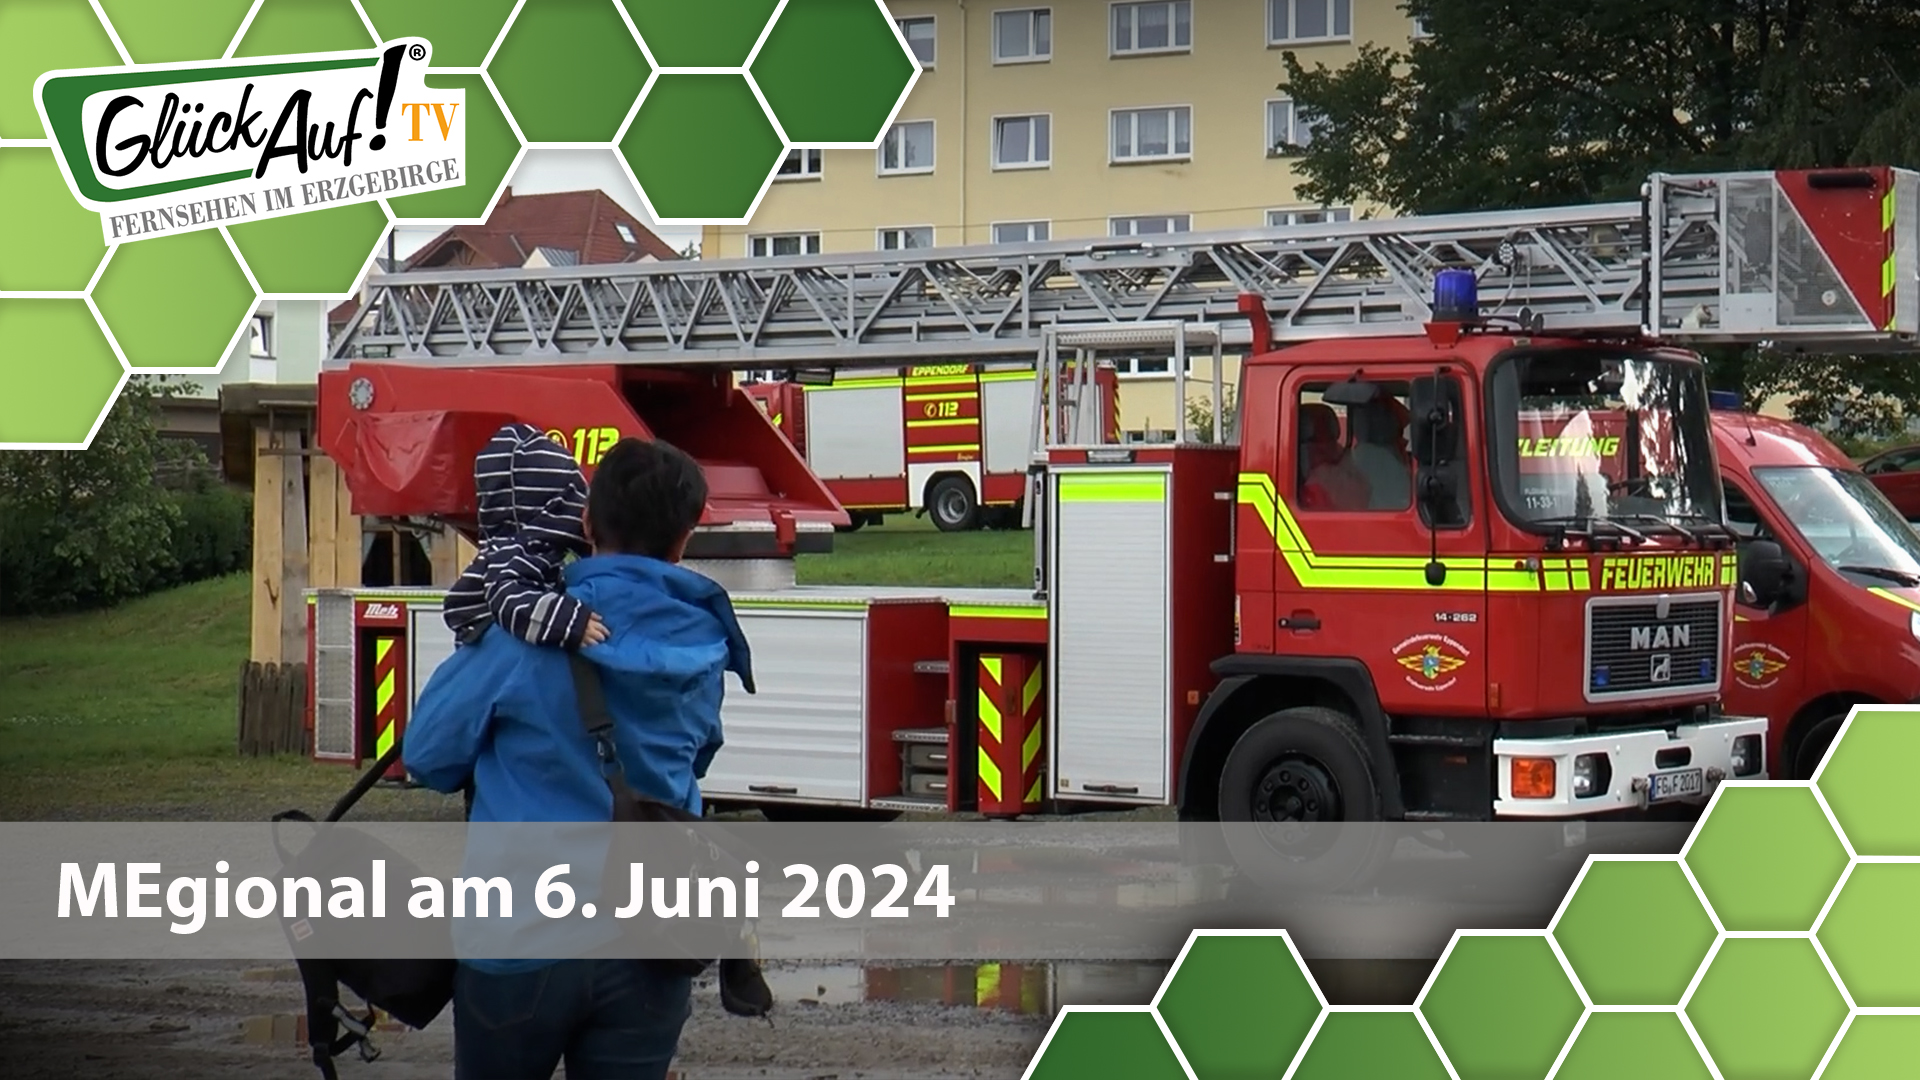 MEgional am 06. Juni 2024 mit dem 140 jährigem Bestehen der Feuerwehr Eppendorf